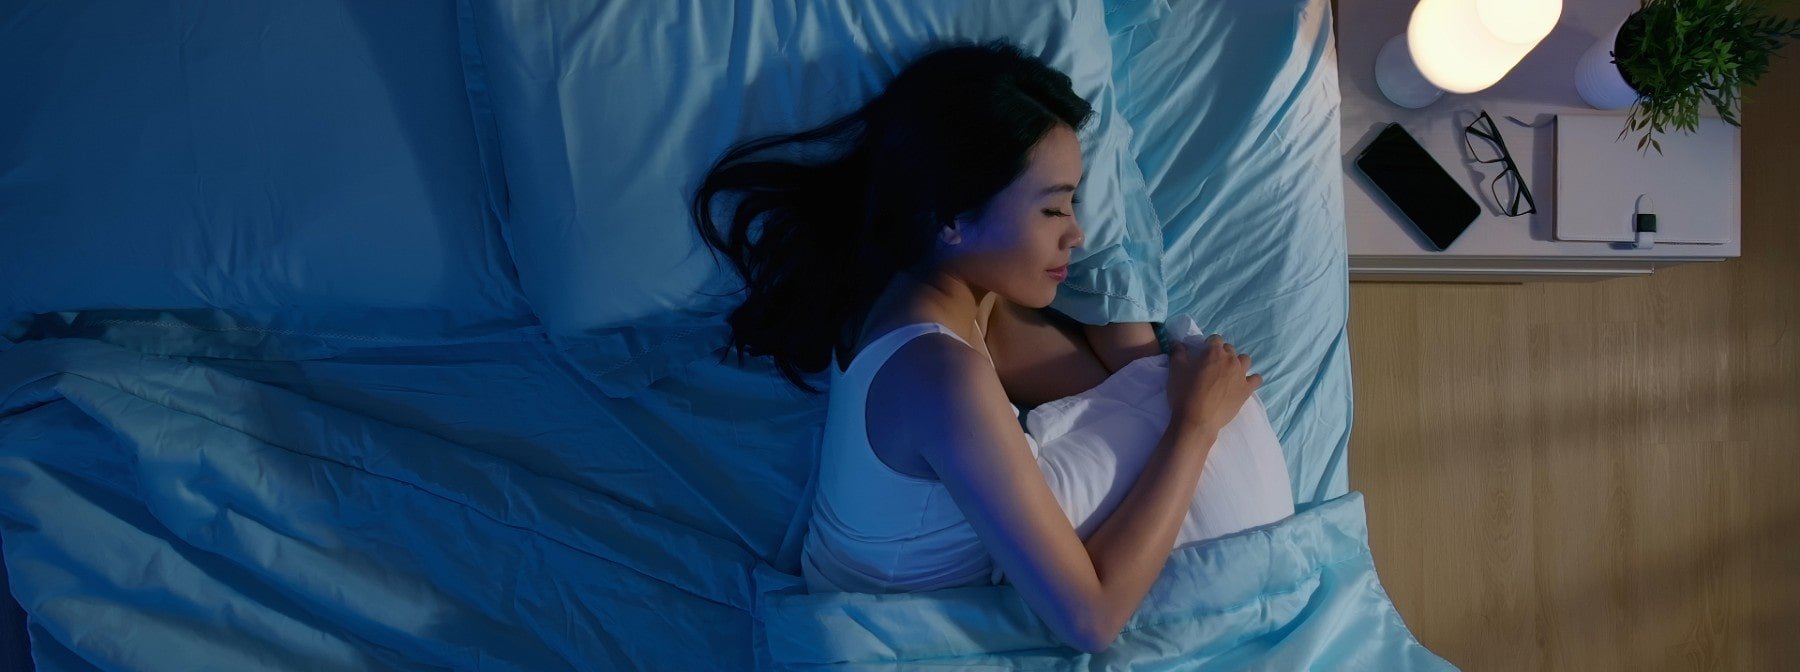 Πέσε για ύπνο πιο γρήγορα με αυτές τις 5 συμβουλές